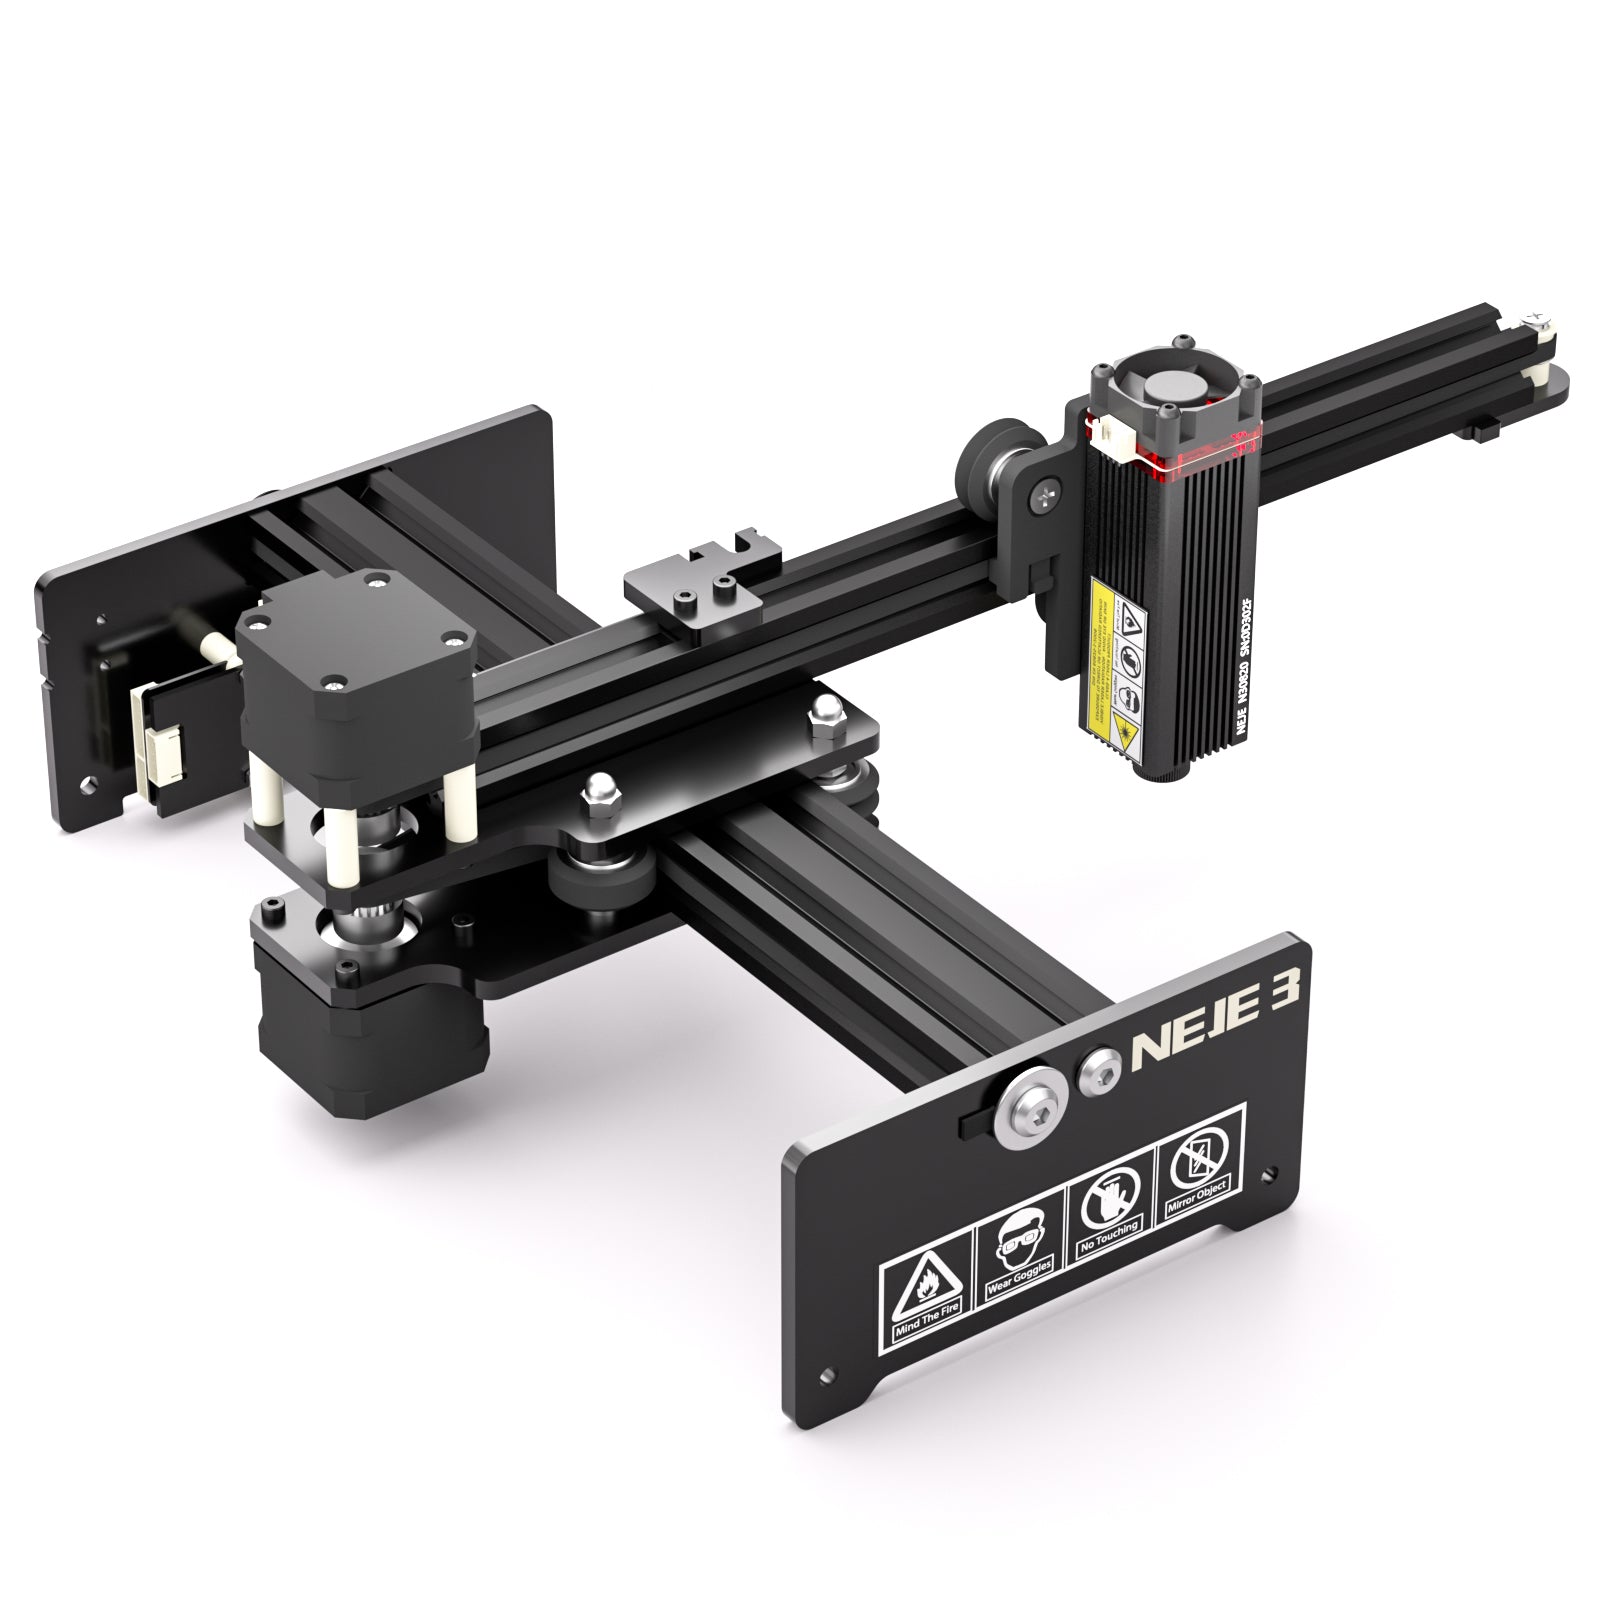 NEJE 3 Laser Engraver and Cutter, Desktop DIY CNC Laser Engraving and Cutting Machine, The NEJE Master 2 Series Latest Upgrade